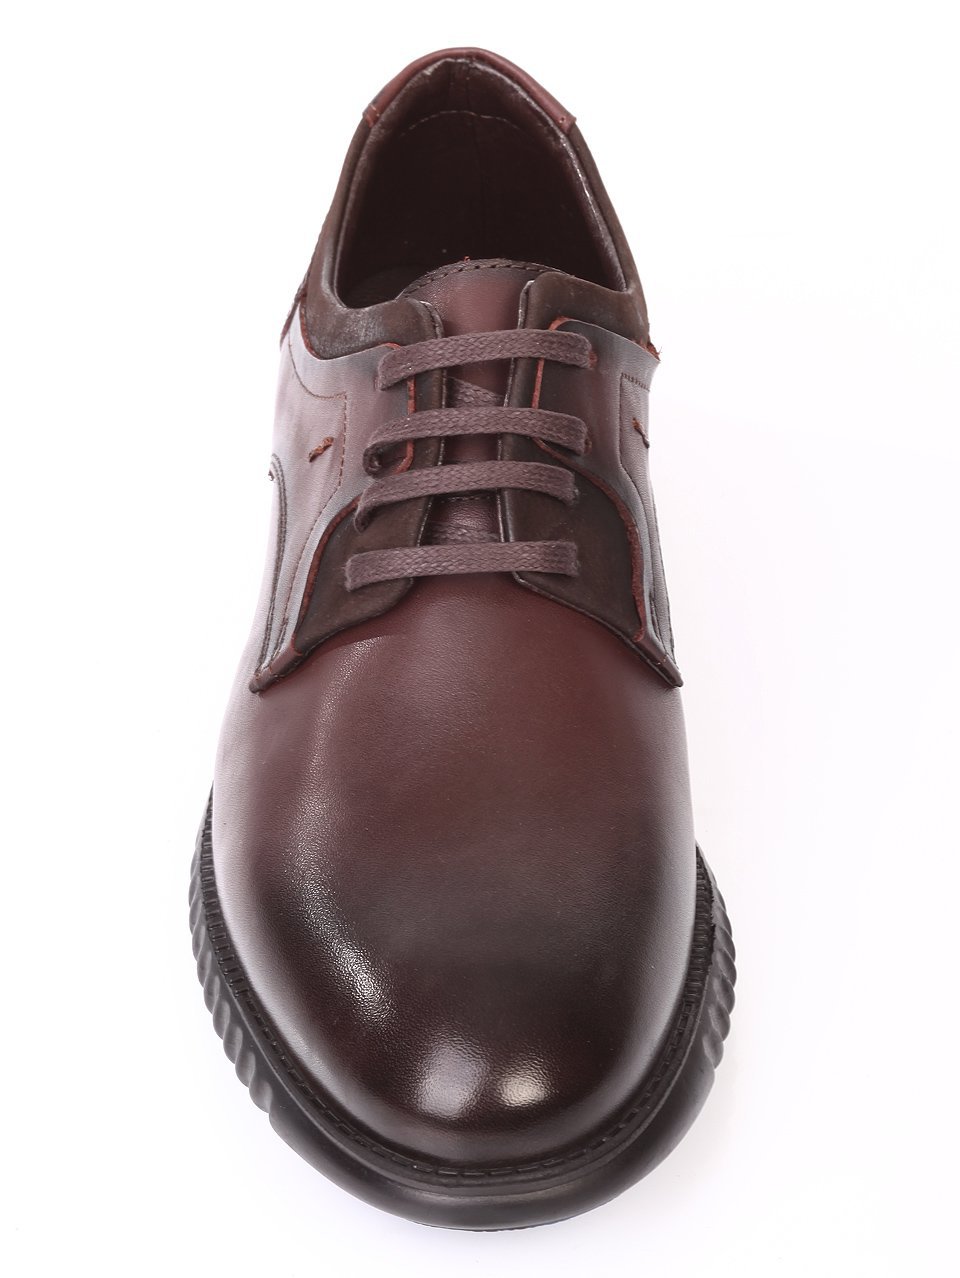 Спортно-елегантни мъжки обувки от естествена кожа 7AT-171206 red